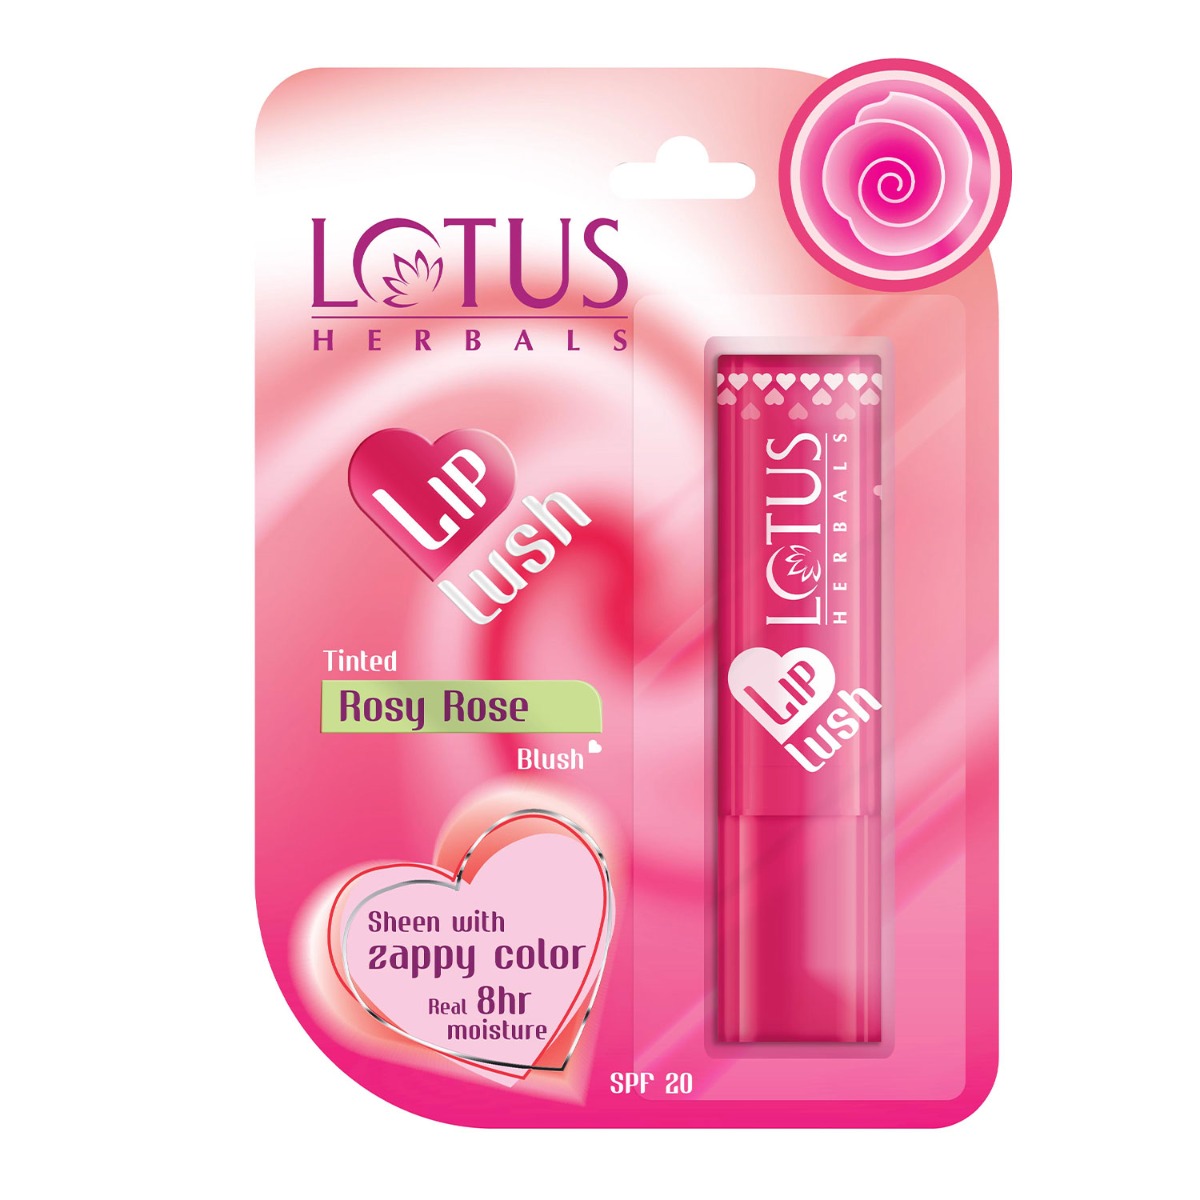 Lotus Herbals Lip Lush Tinted Lip Balm SPF 20 - Rosy Rose Blush, 4gm